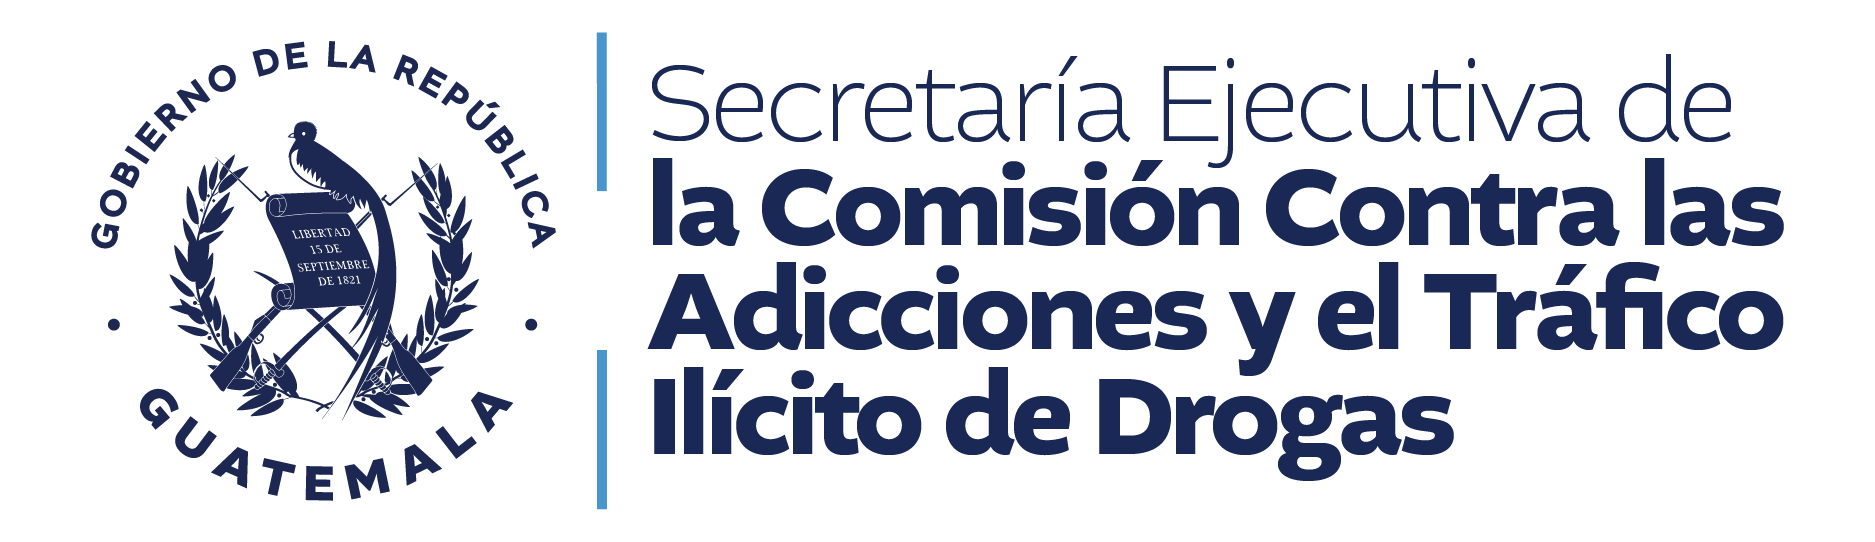 Secretaria Ejecutiva de la Comision Contra las Adicciones y el Trafico Ilicito de Drogas SECCATID 02 2